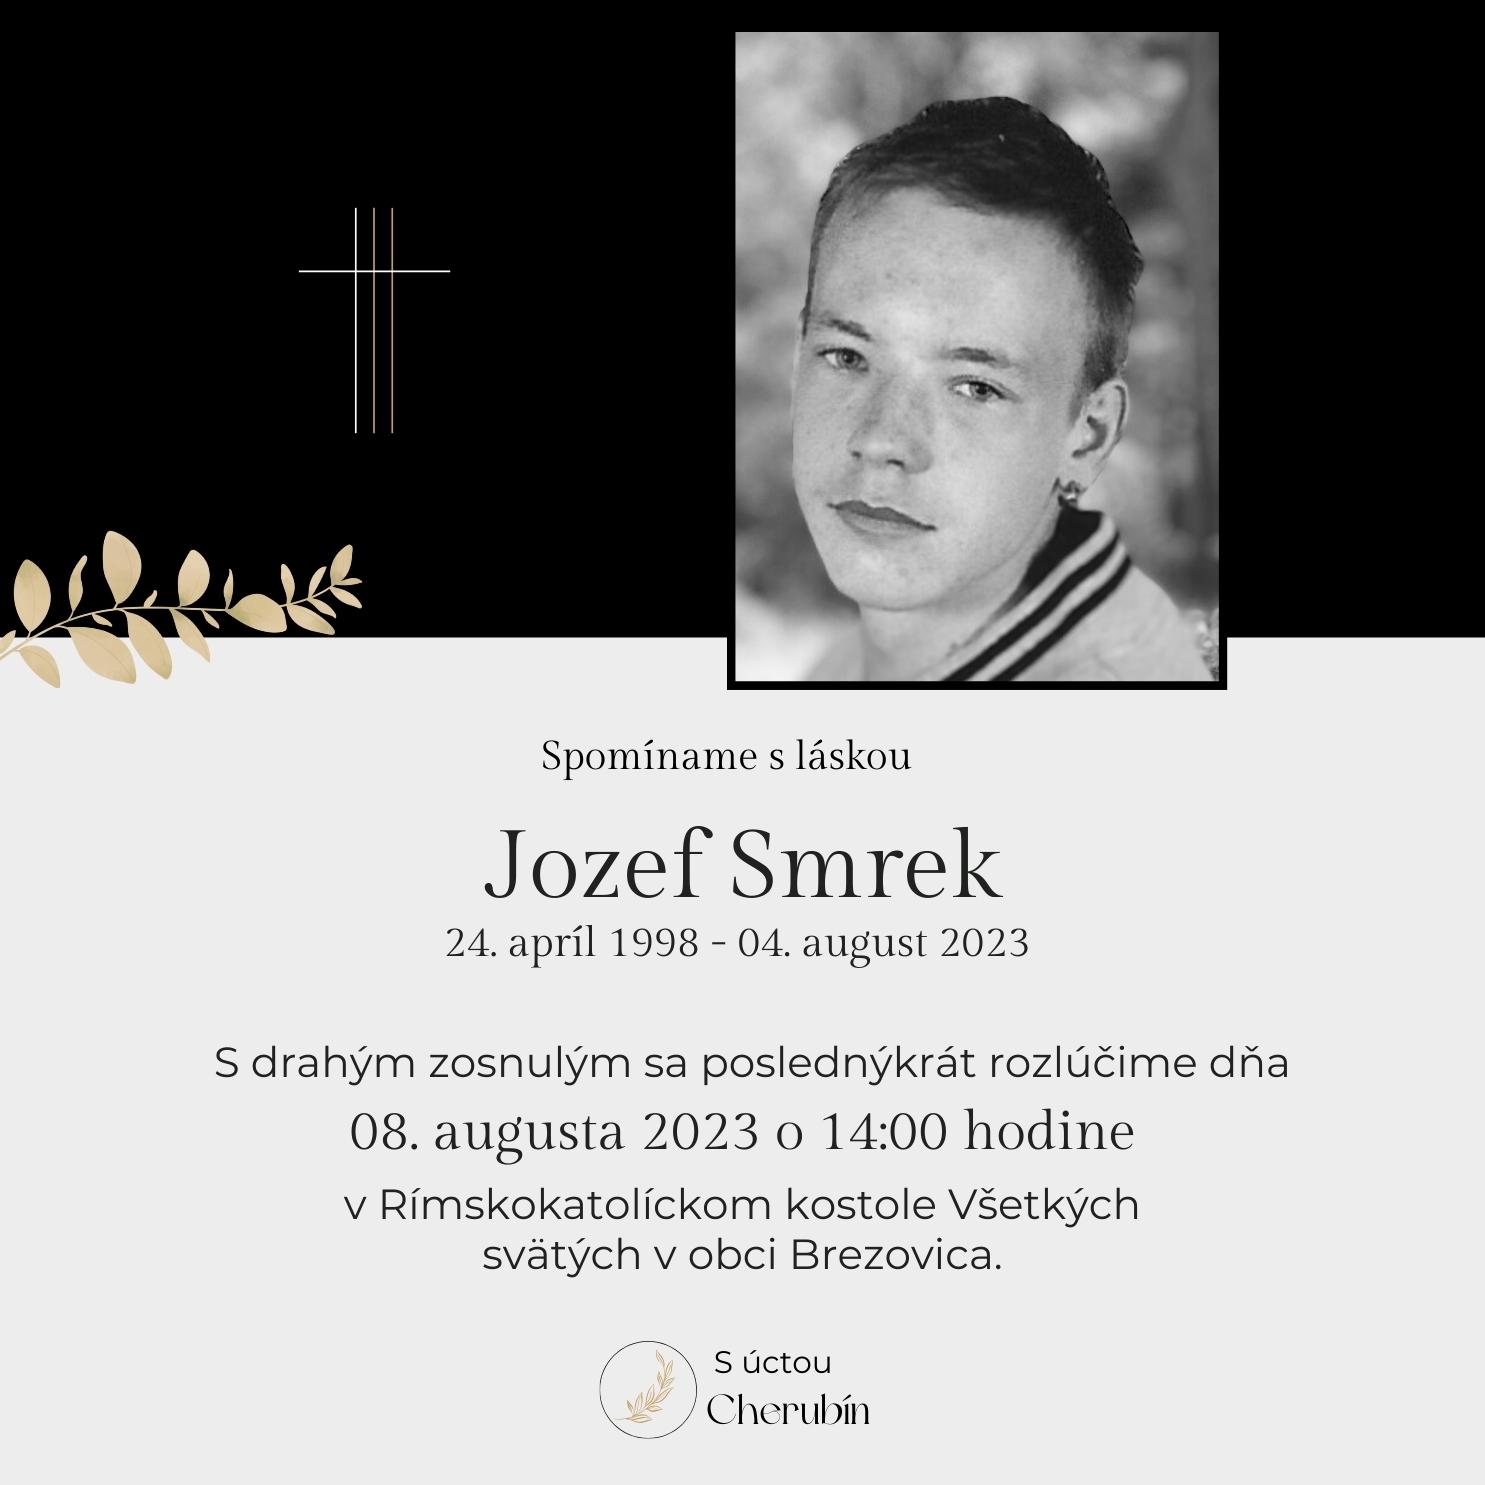 Jozef Smrek